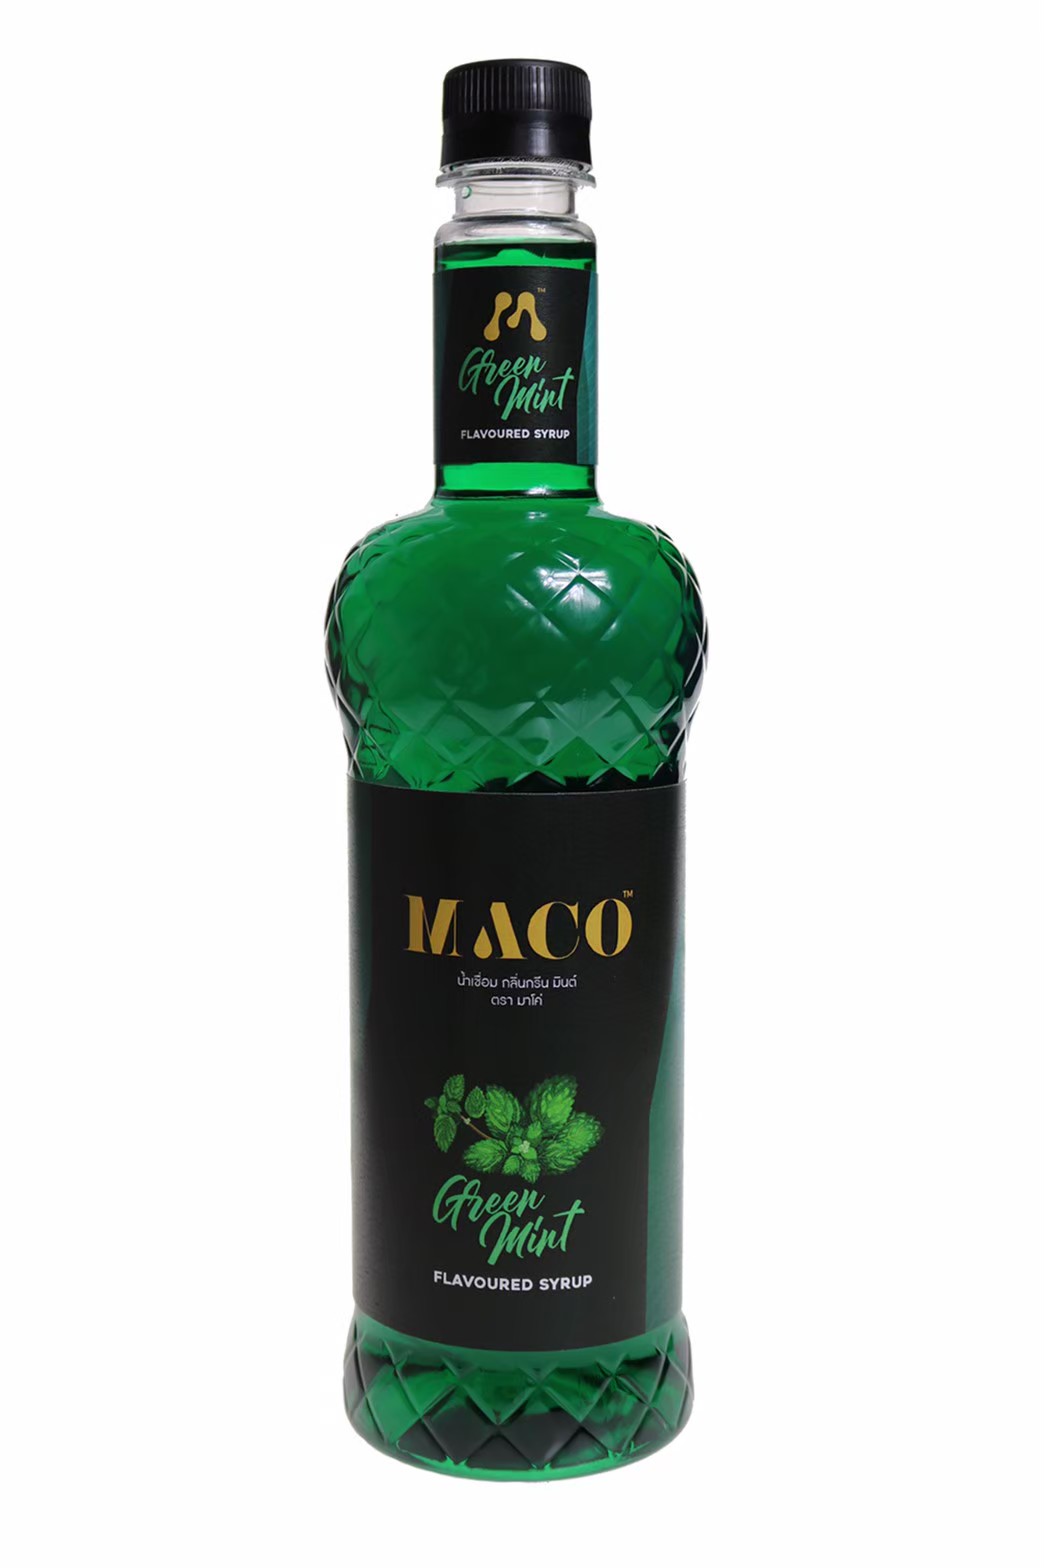 มาโค่ ไซรัป กลิ่นกรีนมิ้นท์ ขนาด 750 มล. (MACO Green Mint Syrup)แถมฟรีหัวปั๊ม จำนวน 1 อัน